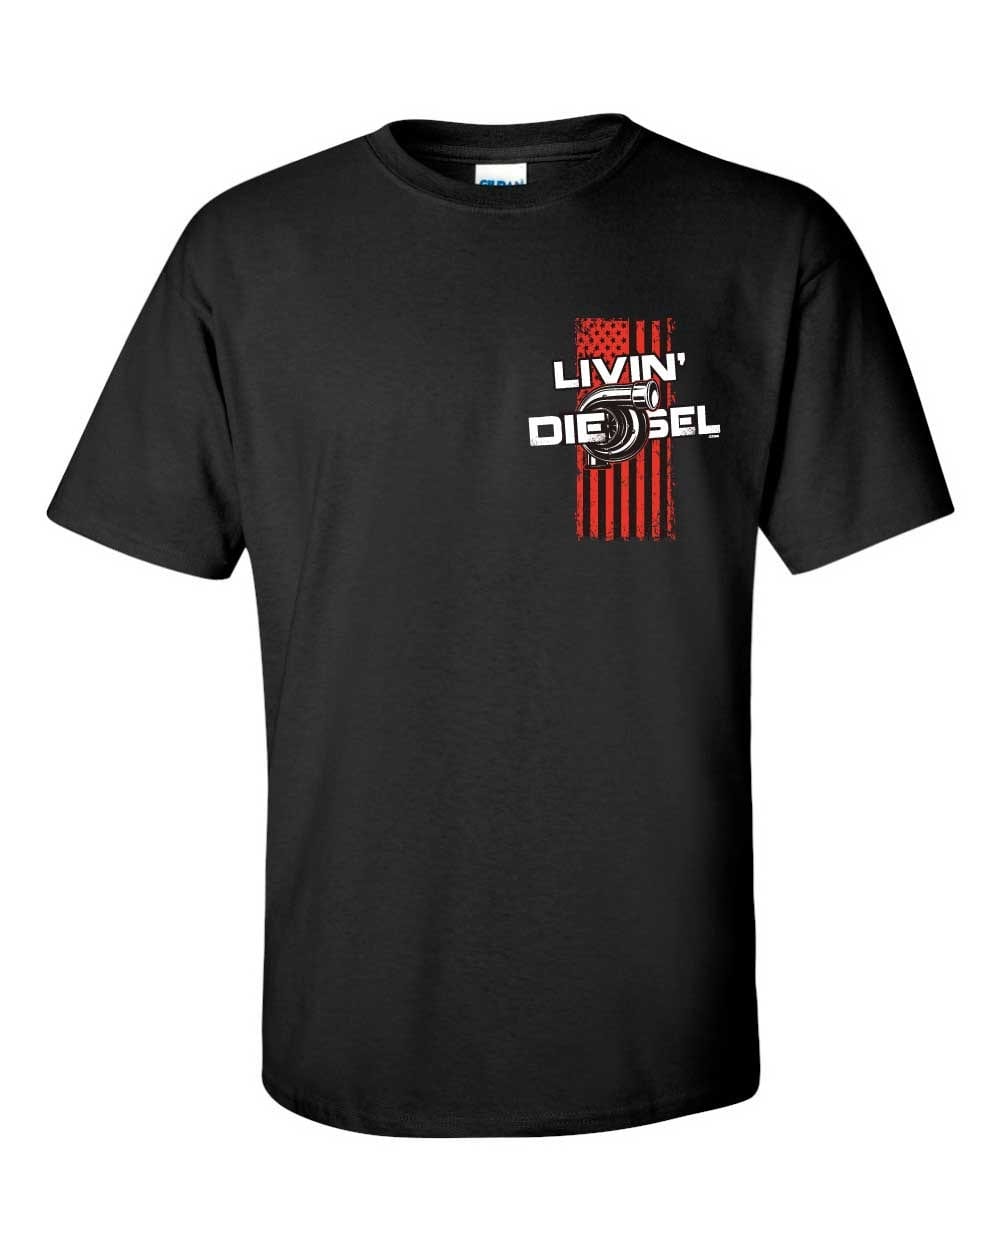 Livin' Diesel Men's Black T-Shirt